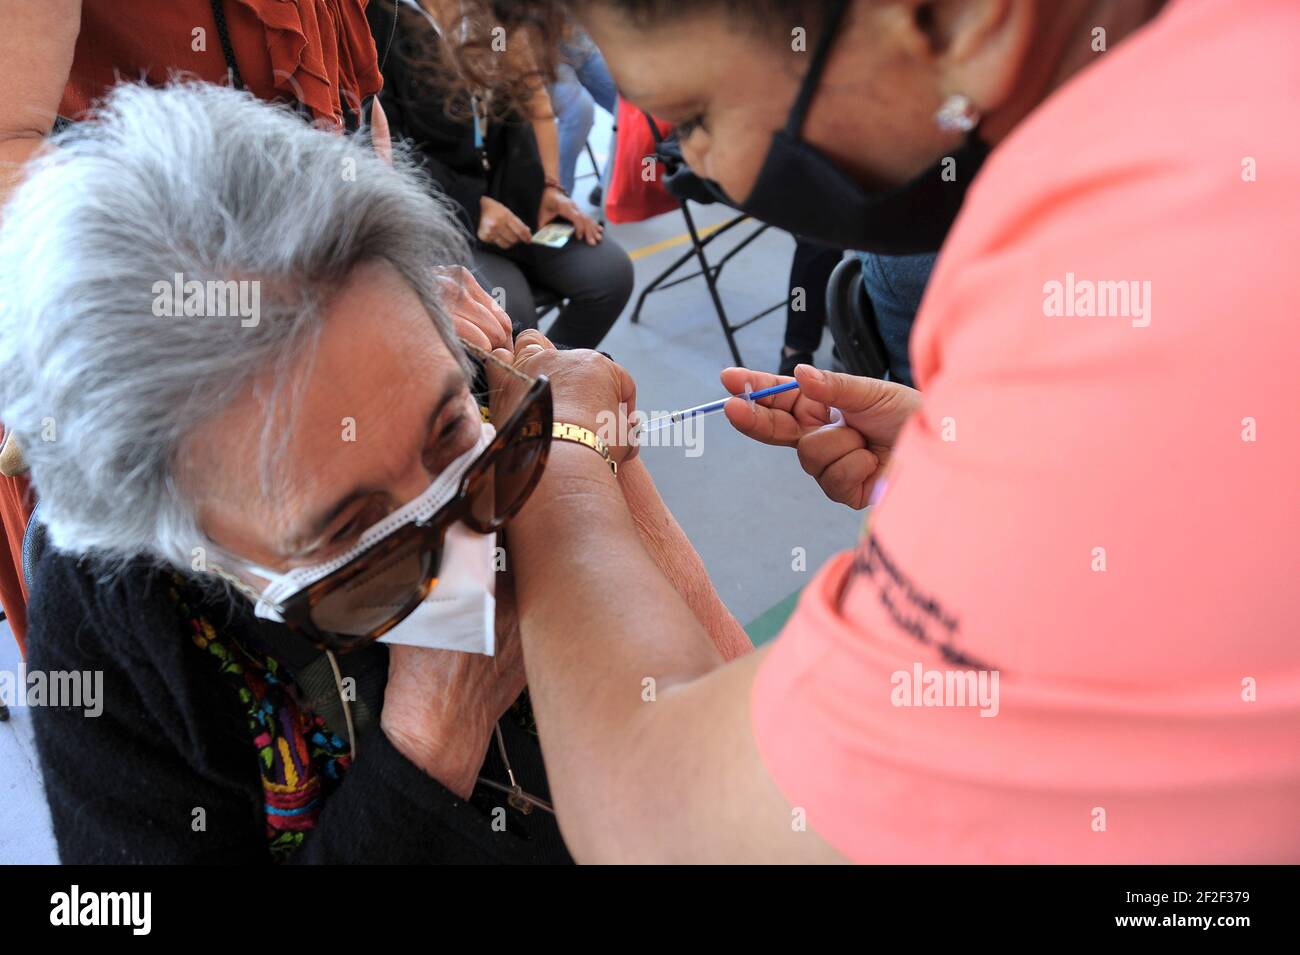 QUERETARO, MESSICO - MARZO 10: Un anziano riceve una dose di vaccino Pfizer, durante un programma nazionale di vaccinazione per immunizzare gli anziani di età superiore a 60 anni in un luogo di vaccinazione situato a la Canada, mentre il governo messicano ha rampante la vaccinazione contro Covid-19. Sono stati applicati più di 2.8 milioni di dosi nel paese. Il 10 marzo 2021 a Queretaro, Messico. Credit: Fernando Camacho/Eyepix Group/The Photo Access Foto Stock